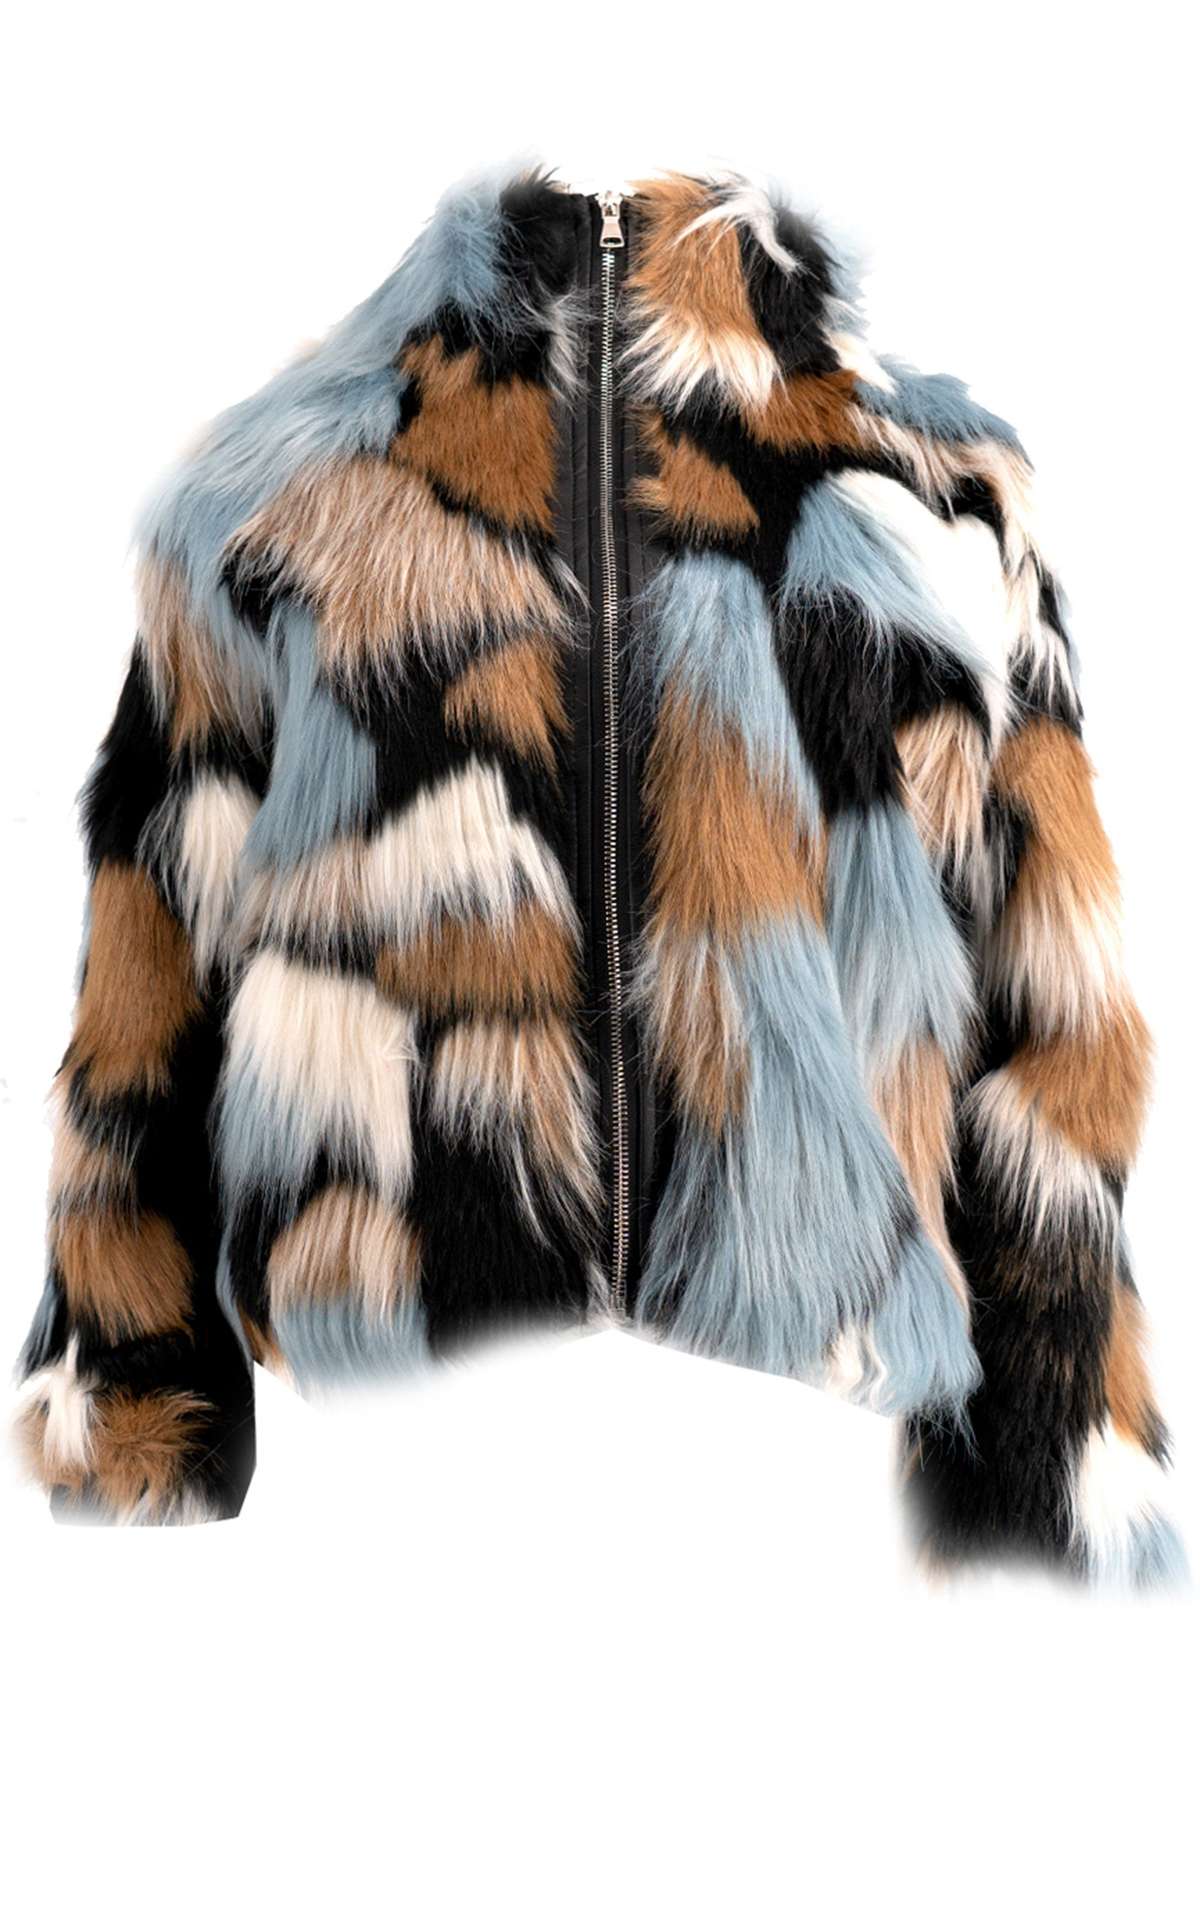 Куртка из искусственного меха Уютная разноцветная куртка из плетеного меха на молнии